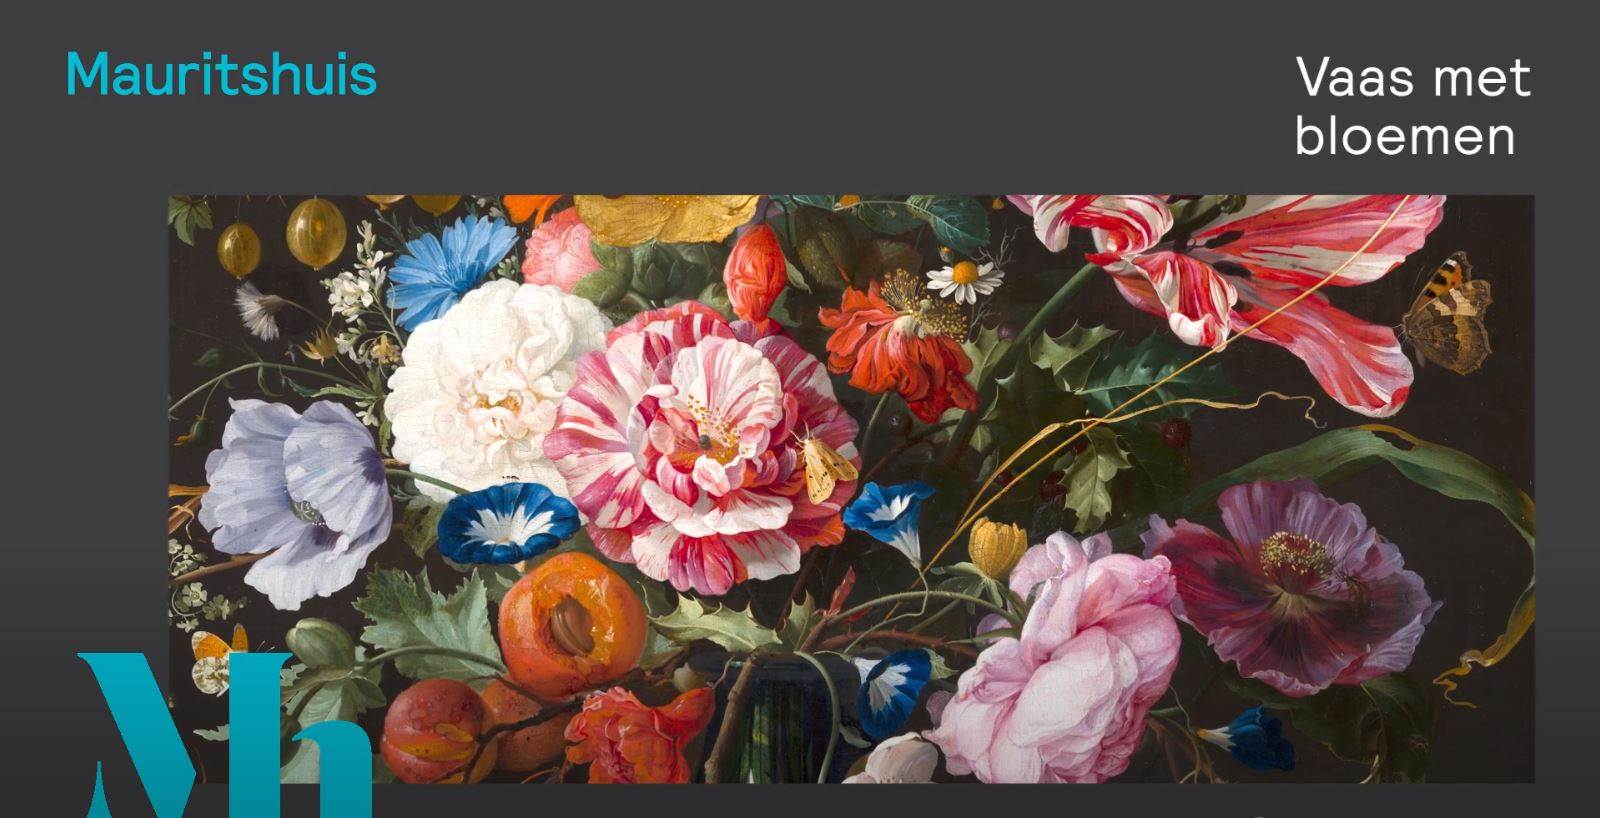 Jan Davidsz de Heem Vaas met bloemen | Mauritshuis